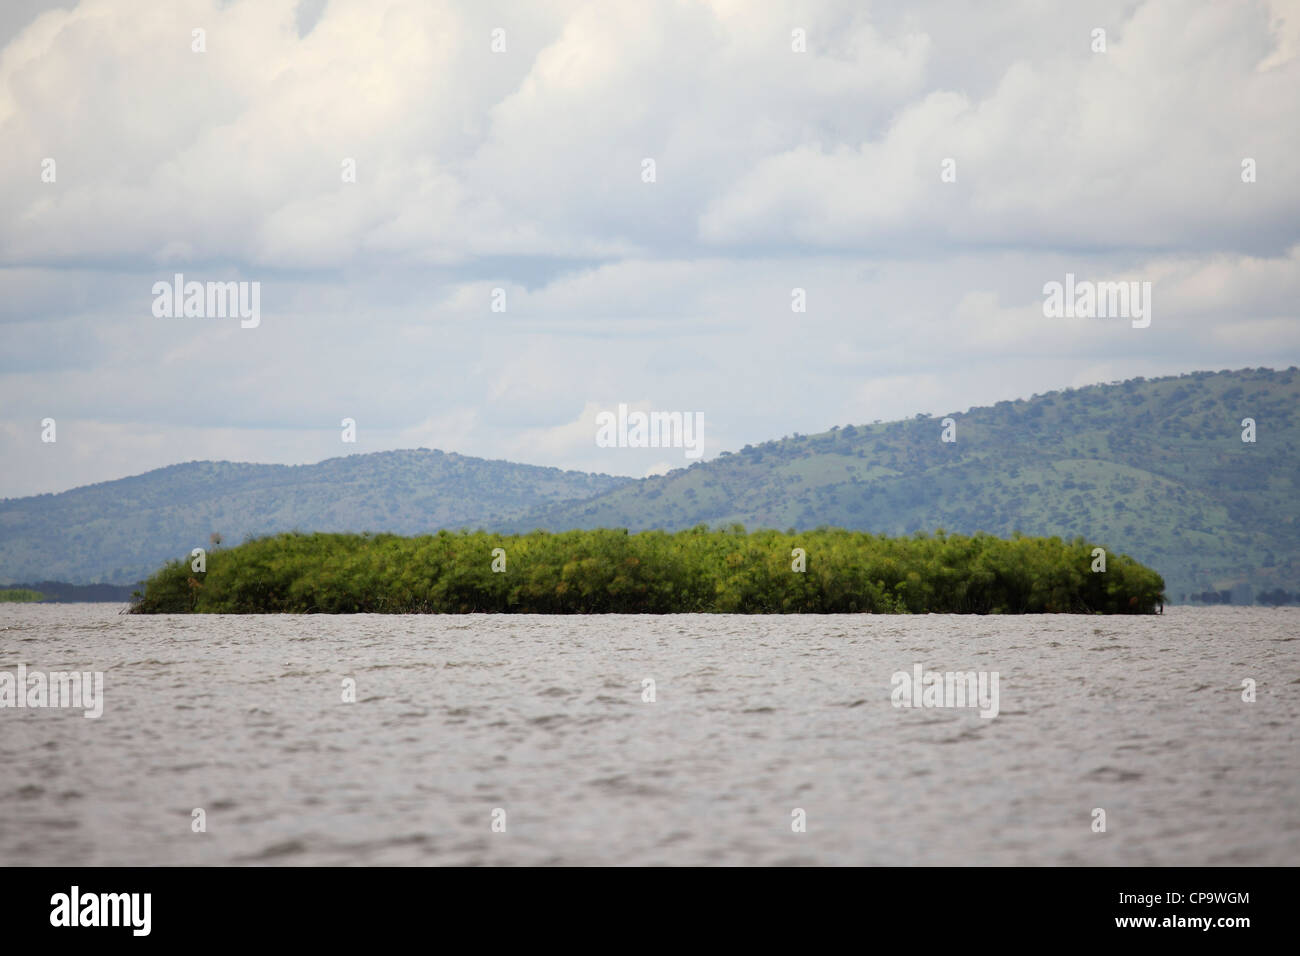 A island of papyrus (Cyperus papyrus) floats on Lake Ihema in Akagera National Park, Rwanda. Stock Photo